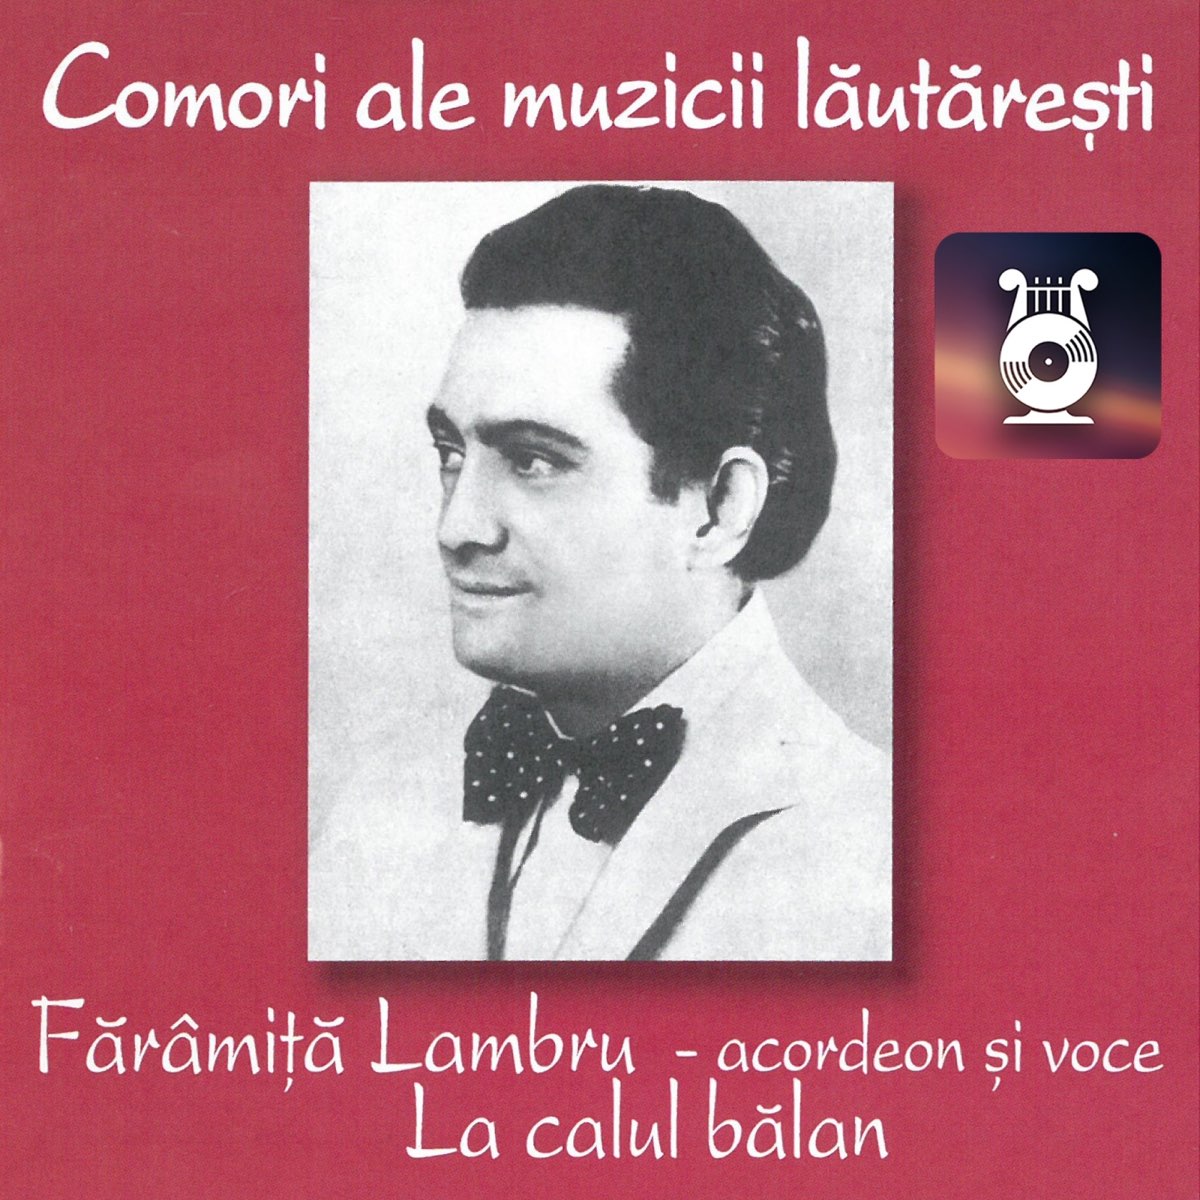 Fărâmiță Lambru (Acordeon Și Voce) by Fărâmiță Lambru on Apple Music